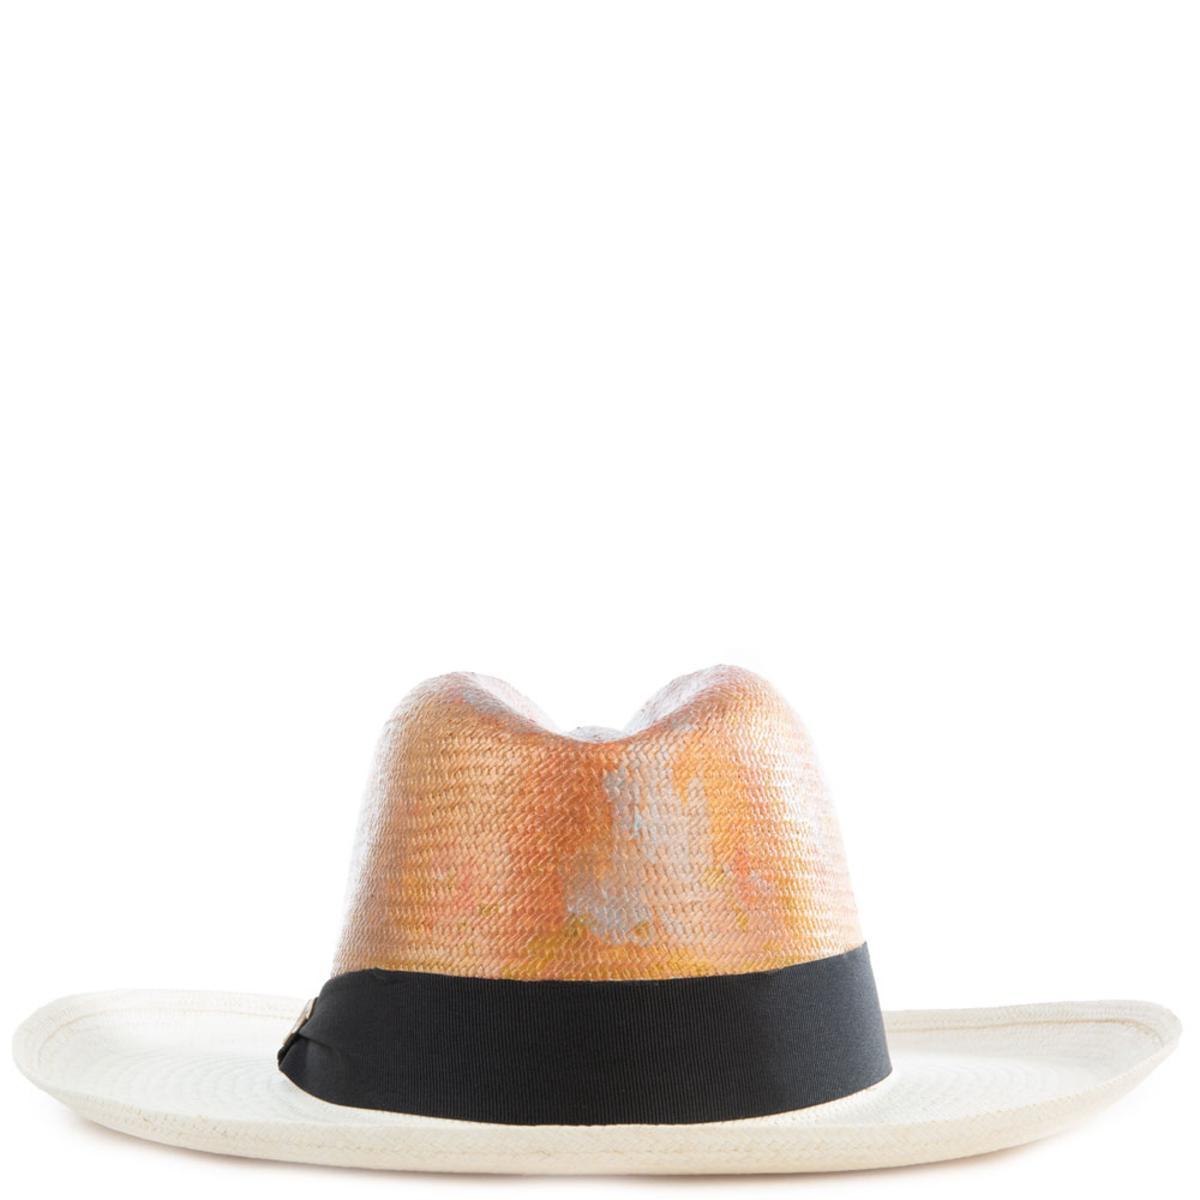 Otono Plateado Panama Hat Size M